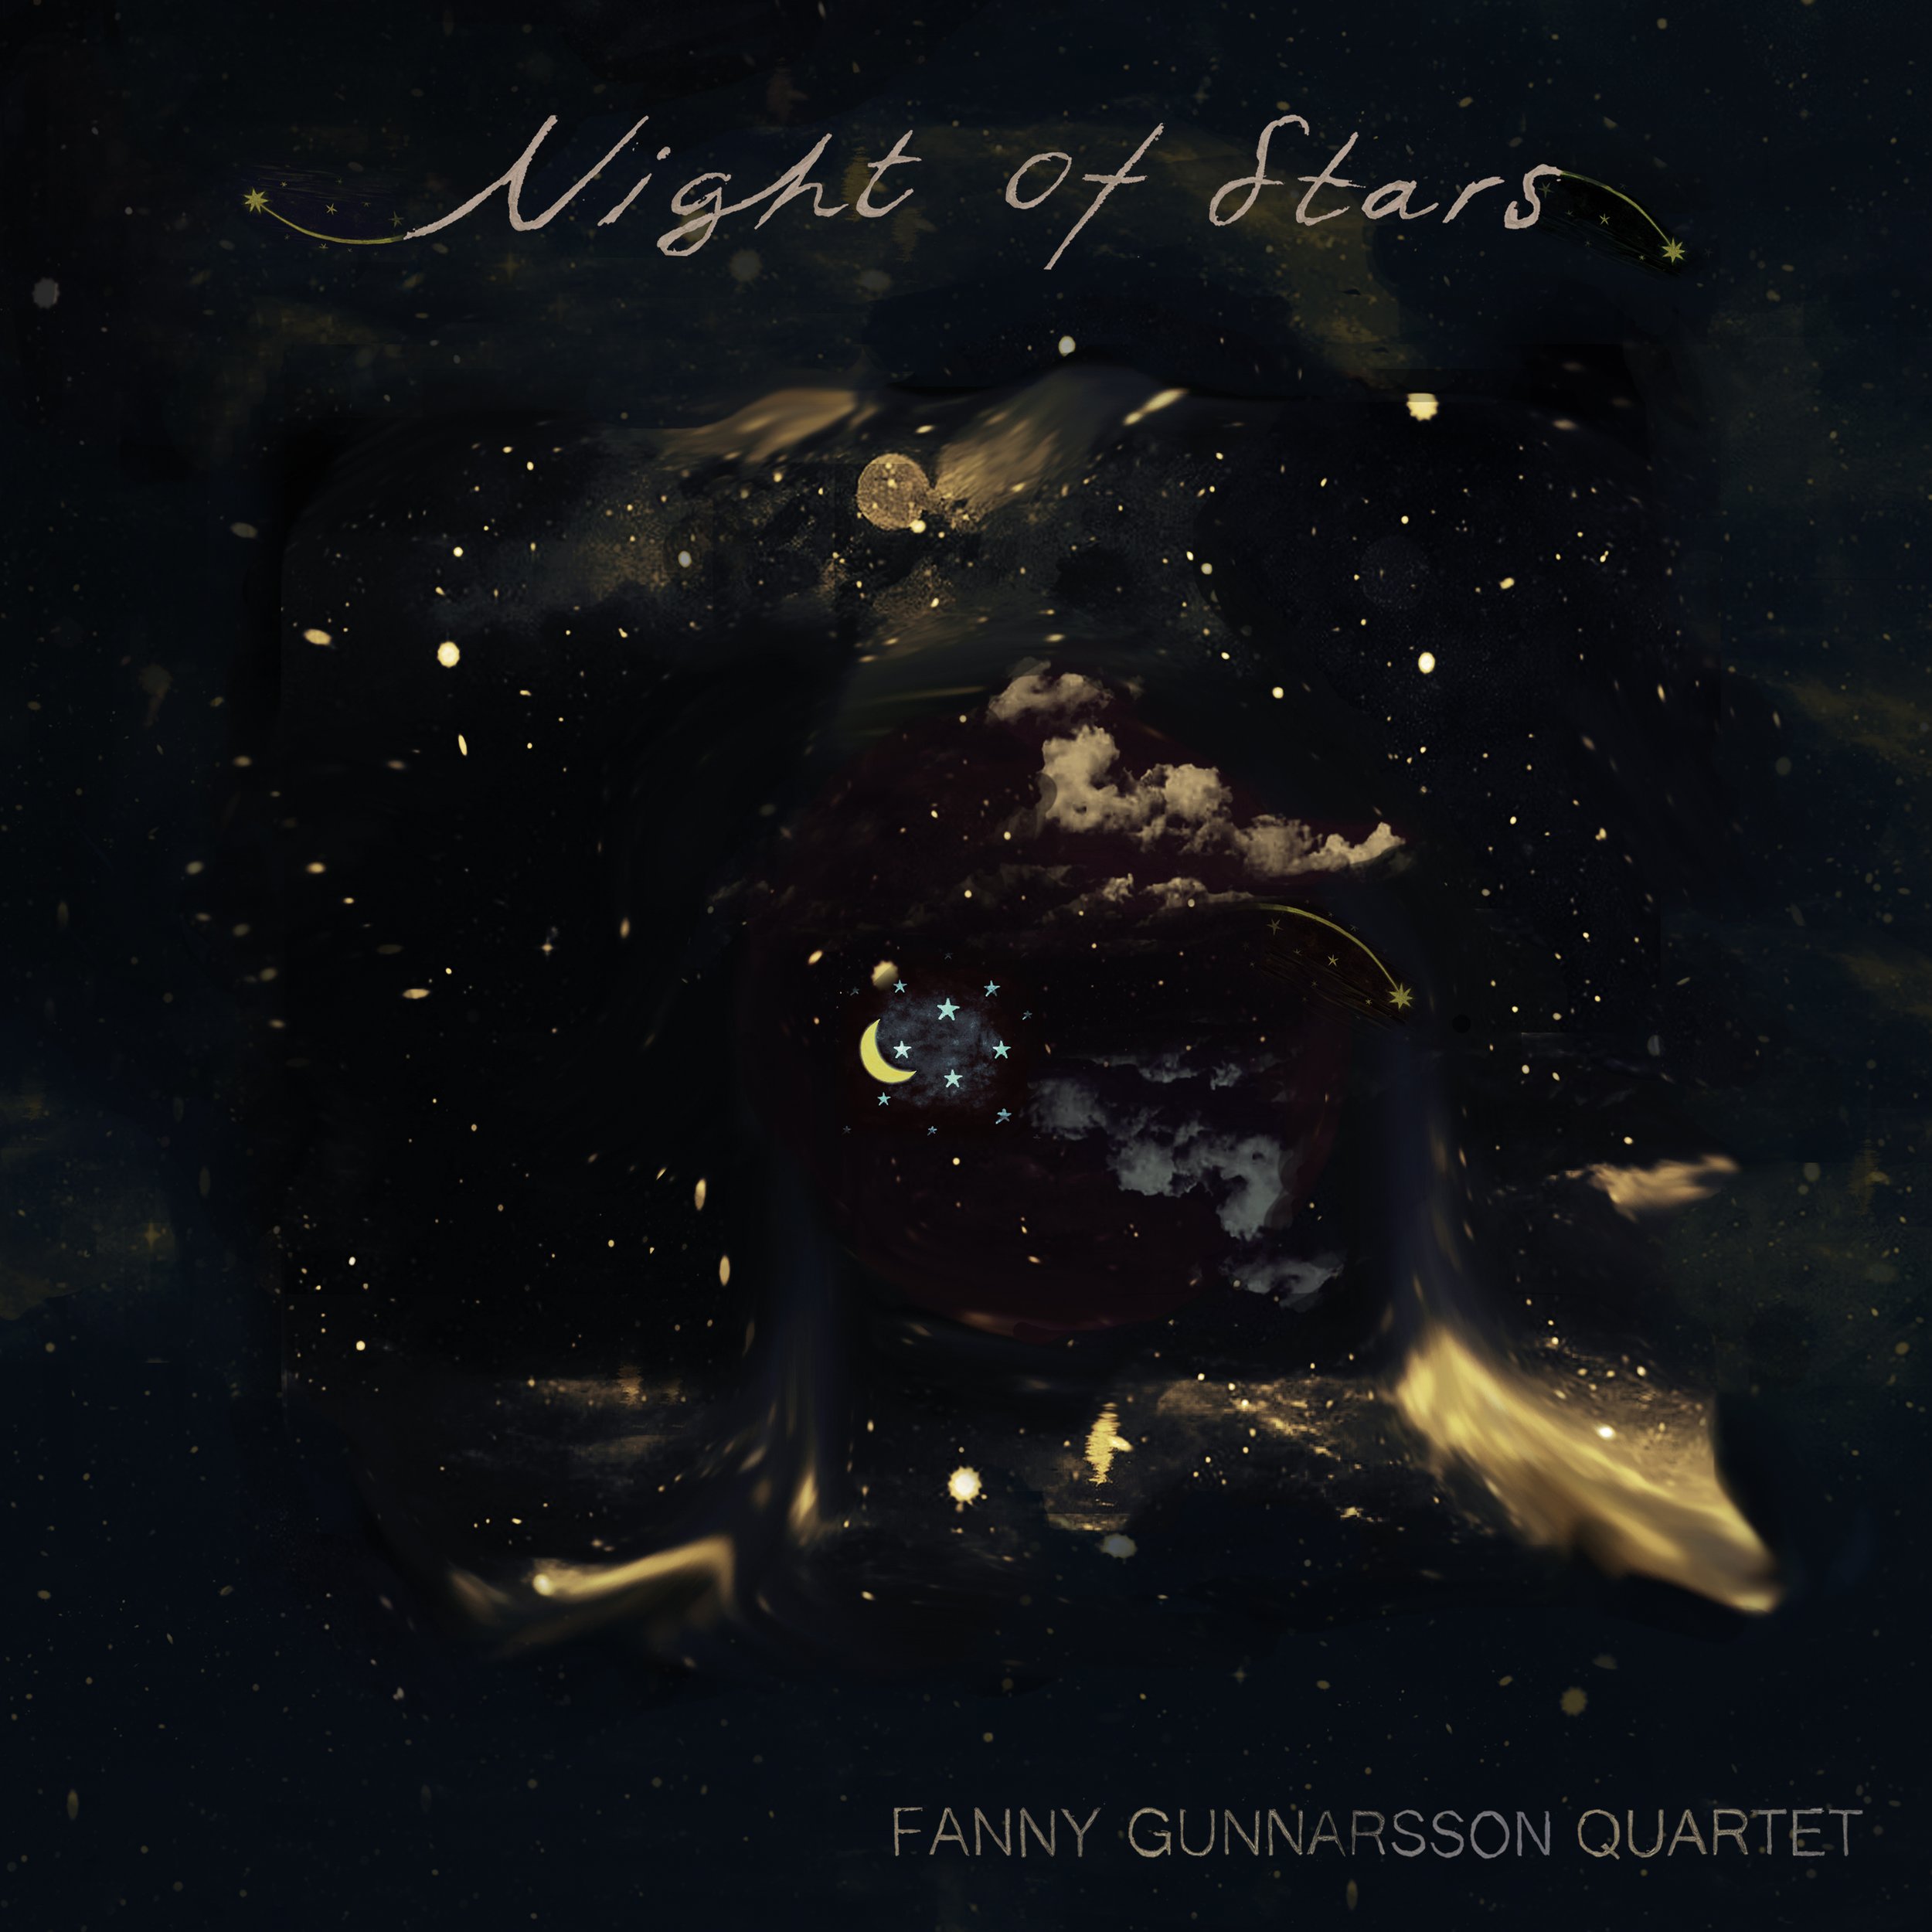 HR078 Fanny Gunnarsson Quartet - Night of Stars